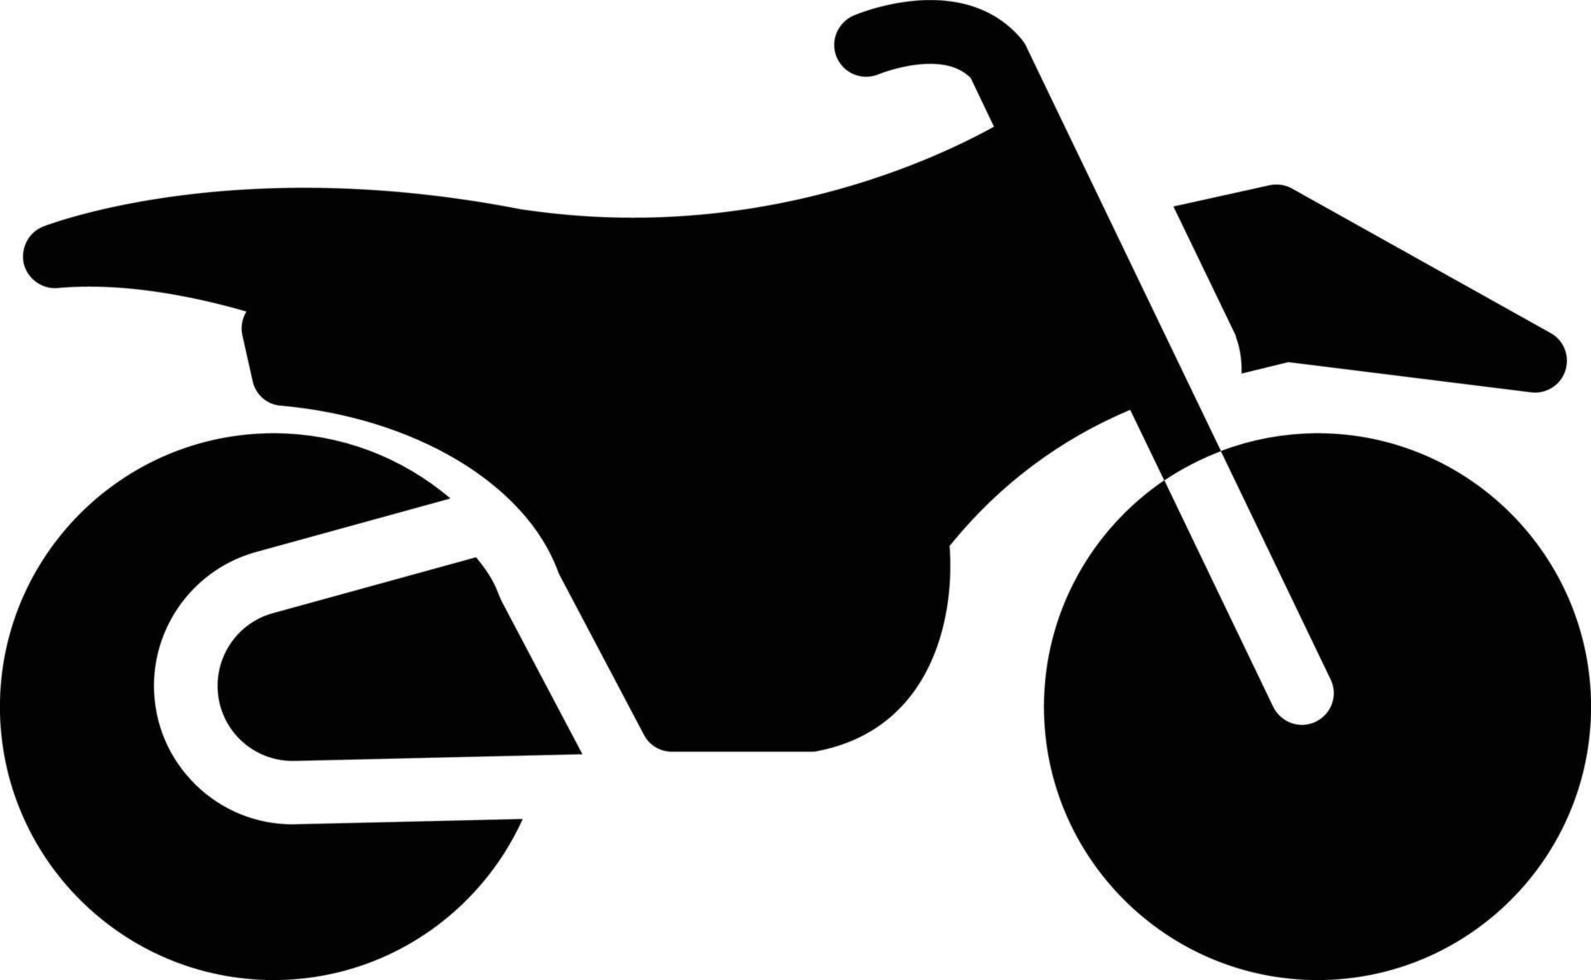 fahrradvektorillustration auf einem hintergrund. hochwertige symbole. vektorikonen für konzept und grafikdesign. vektor